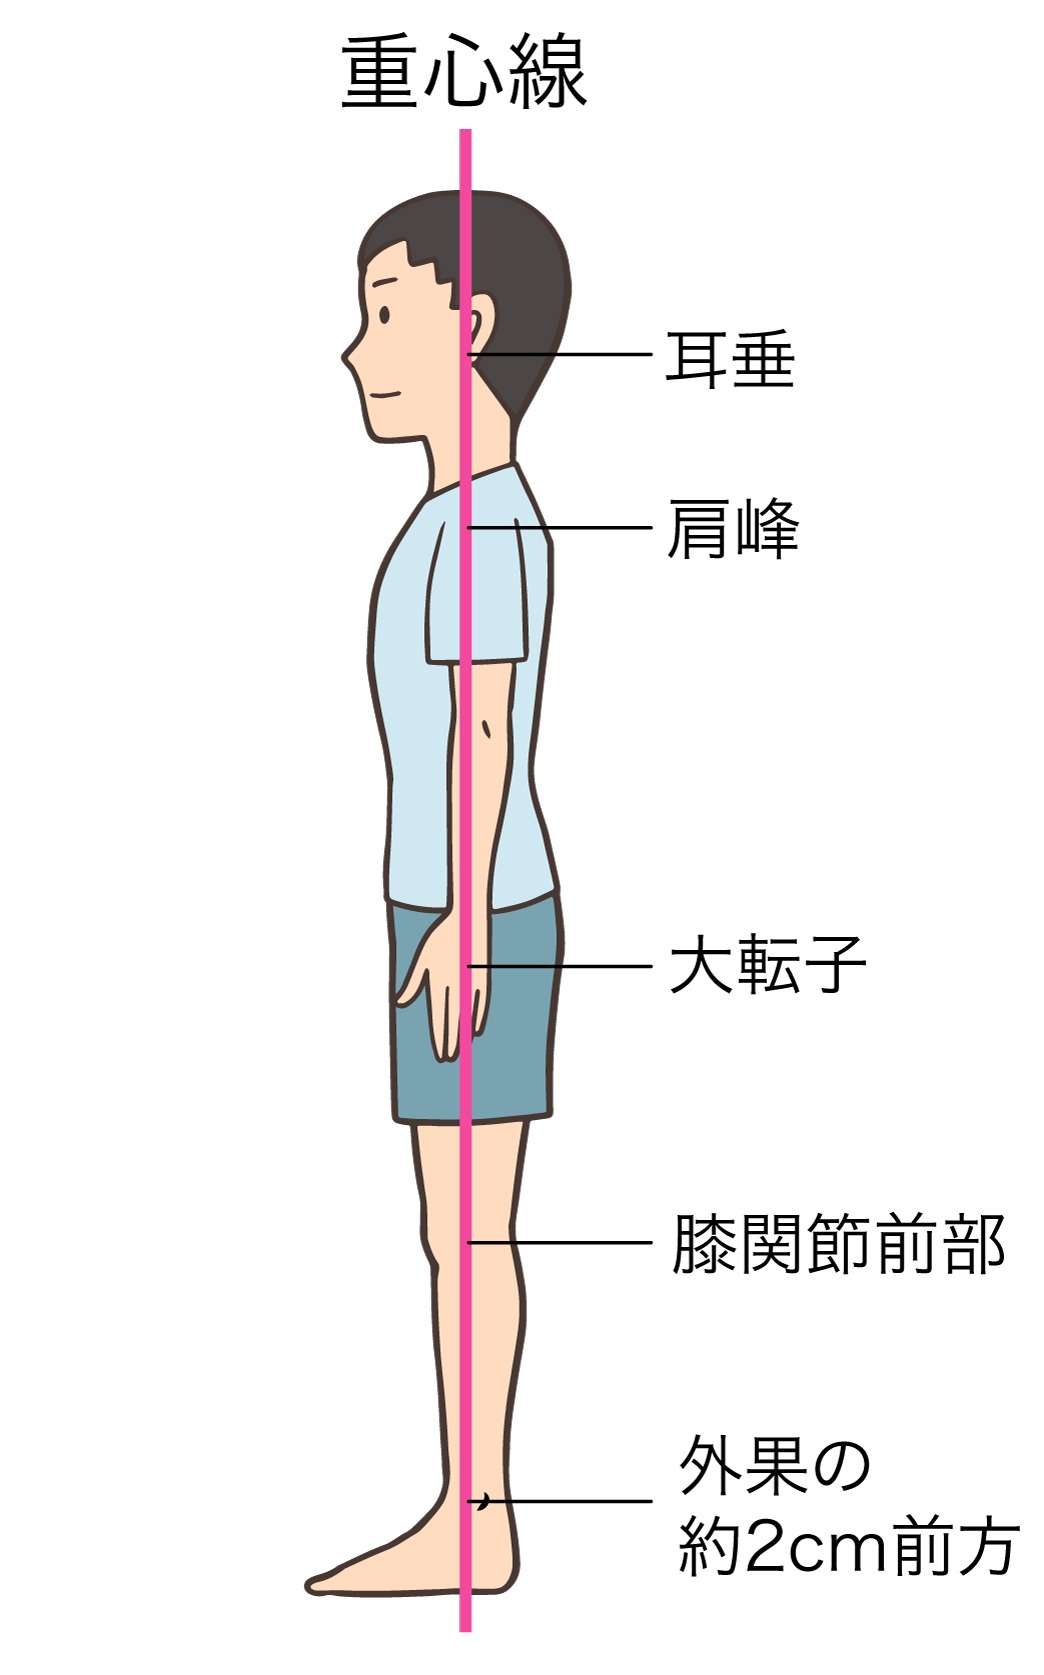 大阪市内で姿勢矯正をお探しの方　生野区北巽の結び鍼灸マッサージ鍼灸整骨院の整体にお任せください。